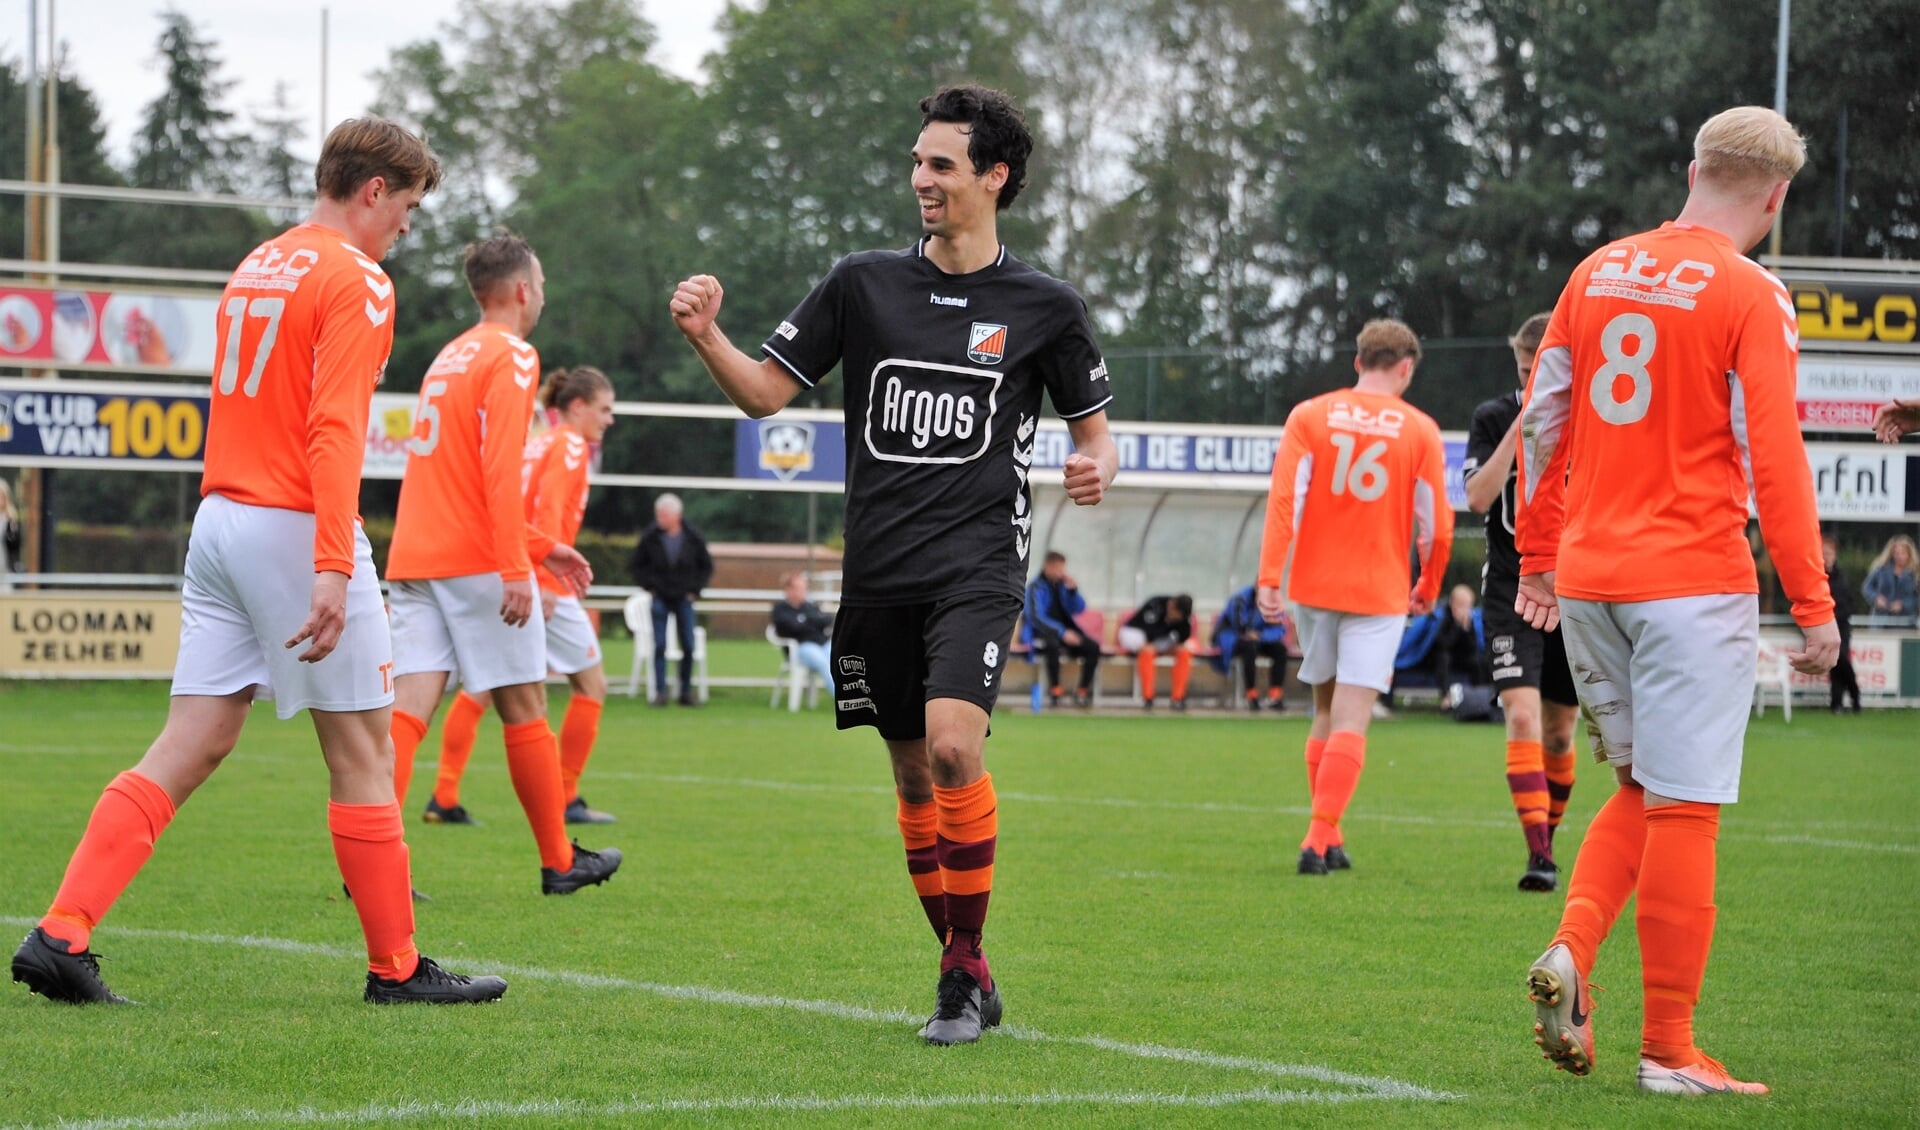 Jelle Macare van FC Zutphen viert zijn derde doelpunt voor FC Zutphen. Foto: Hans ten Brinke